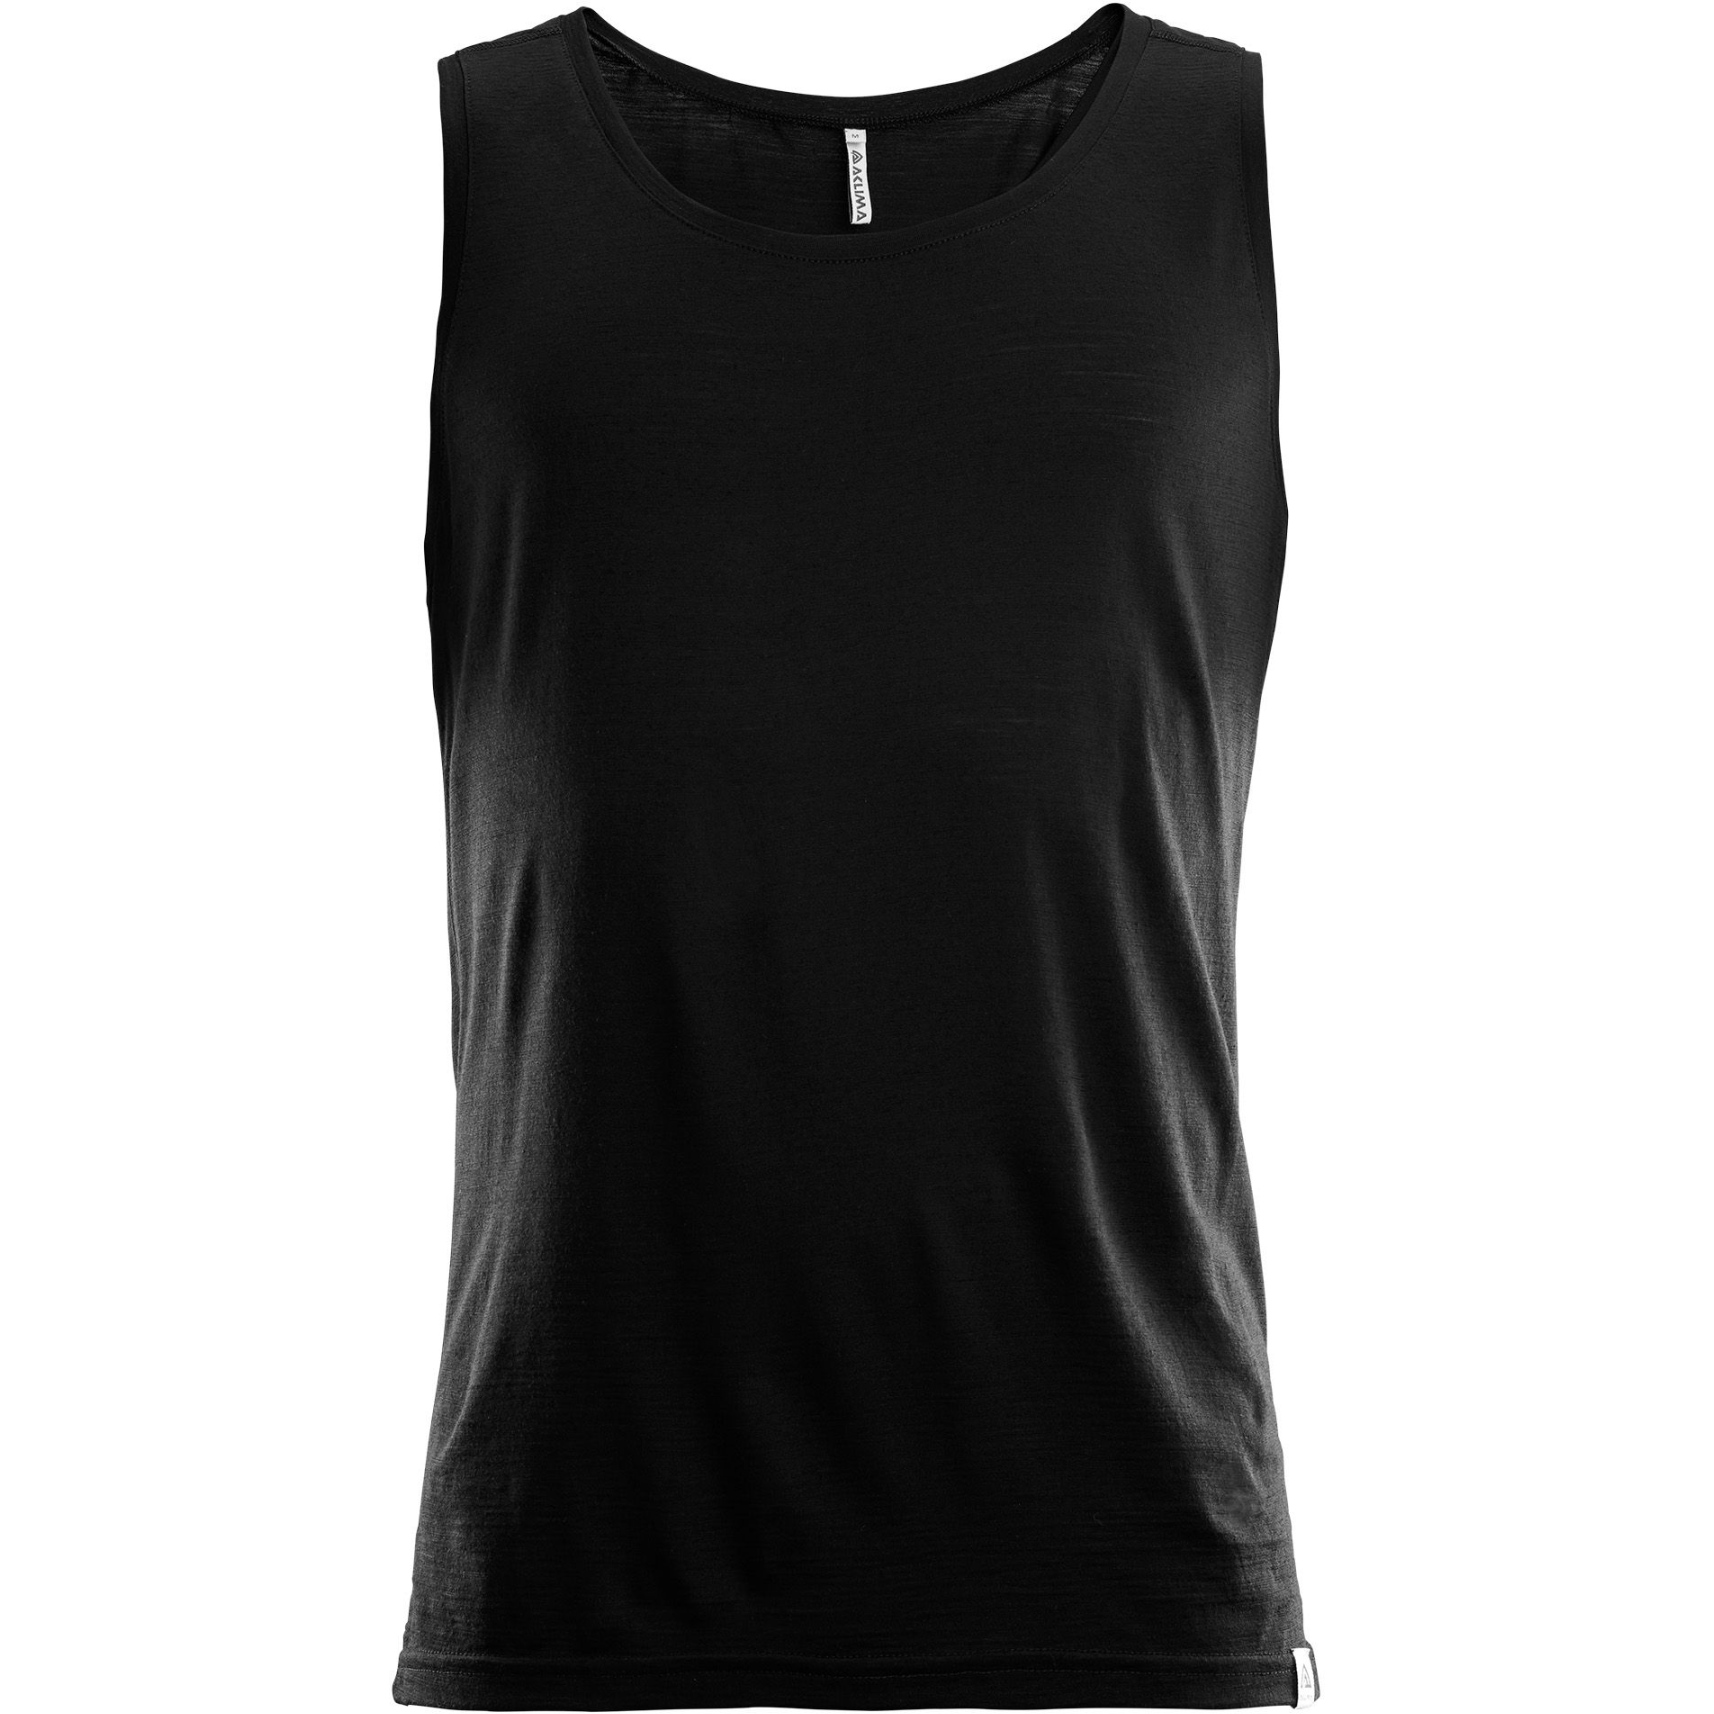 Produktbild von Aclima Lightwool Singlet Ärmelloses Shirt Herren - jet black